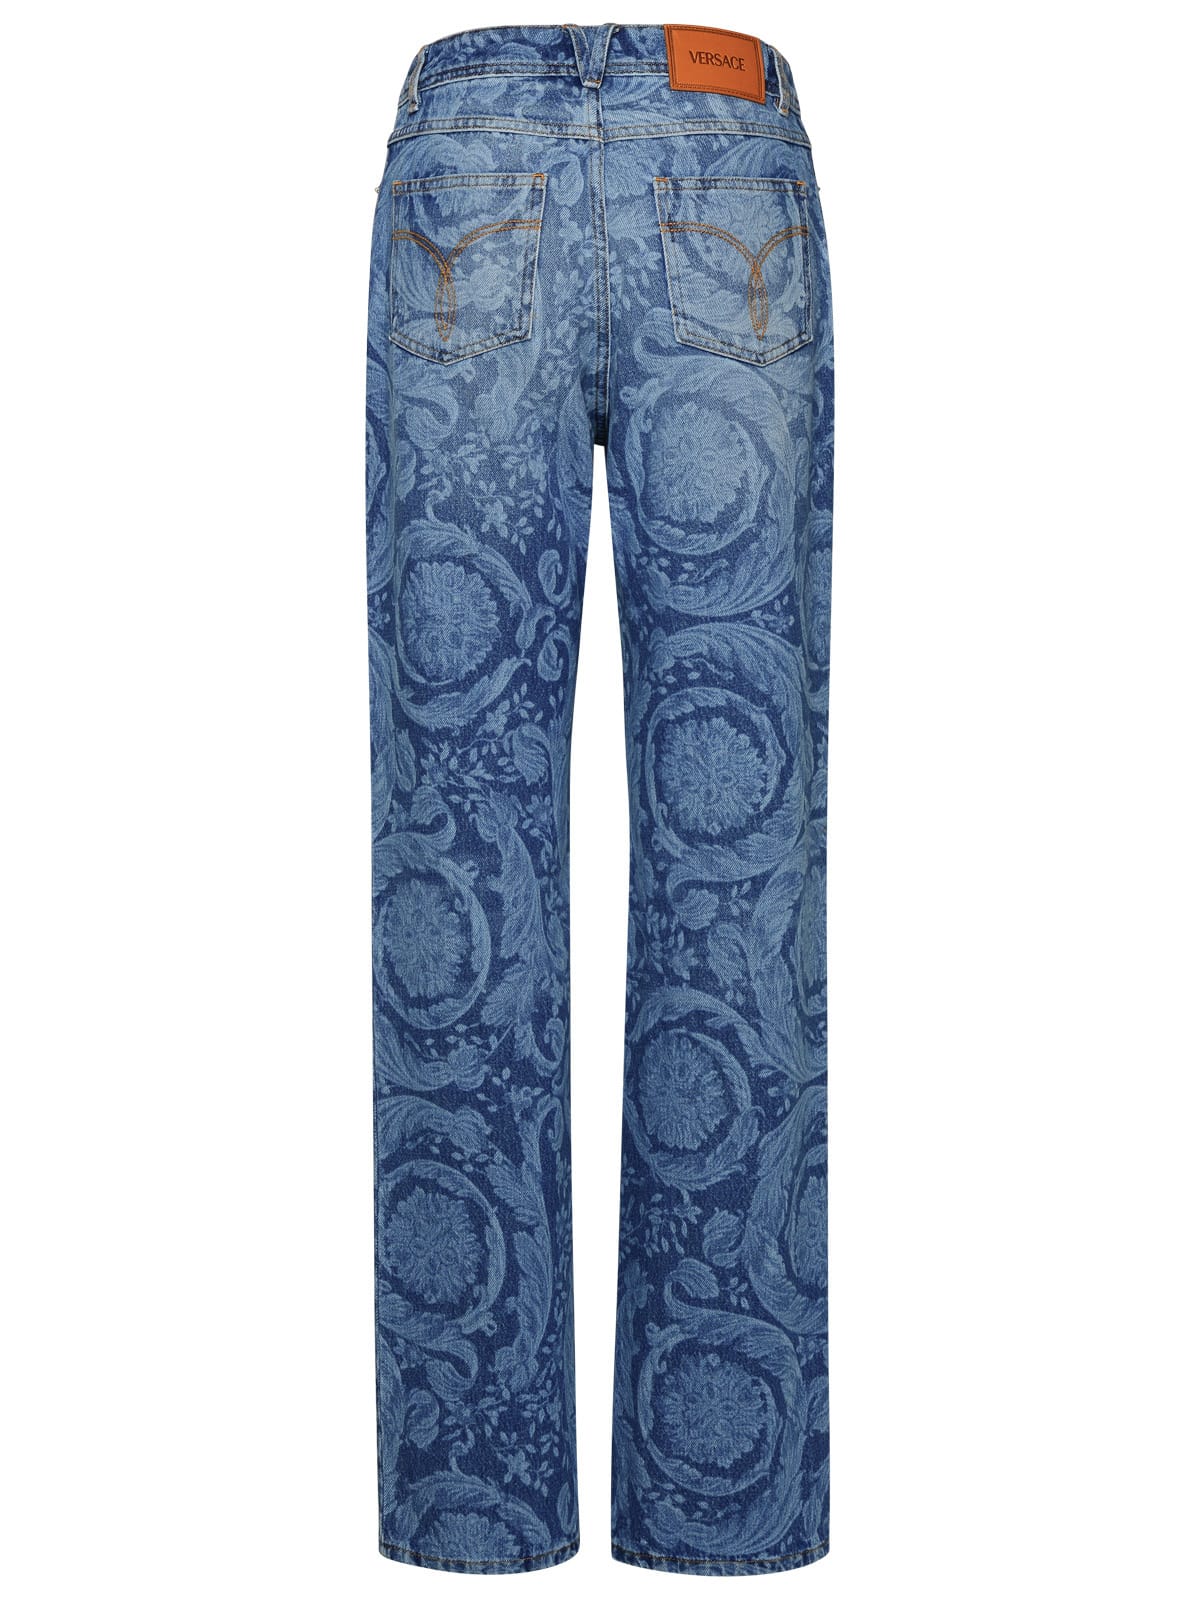 Shop Versace Barocco Blue Cotton Jeans